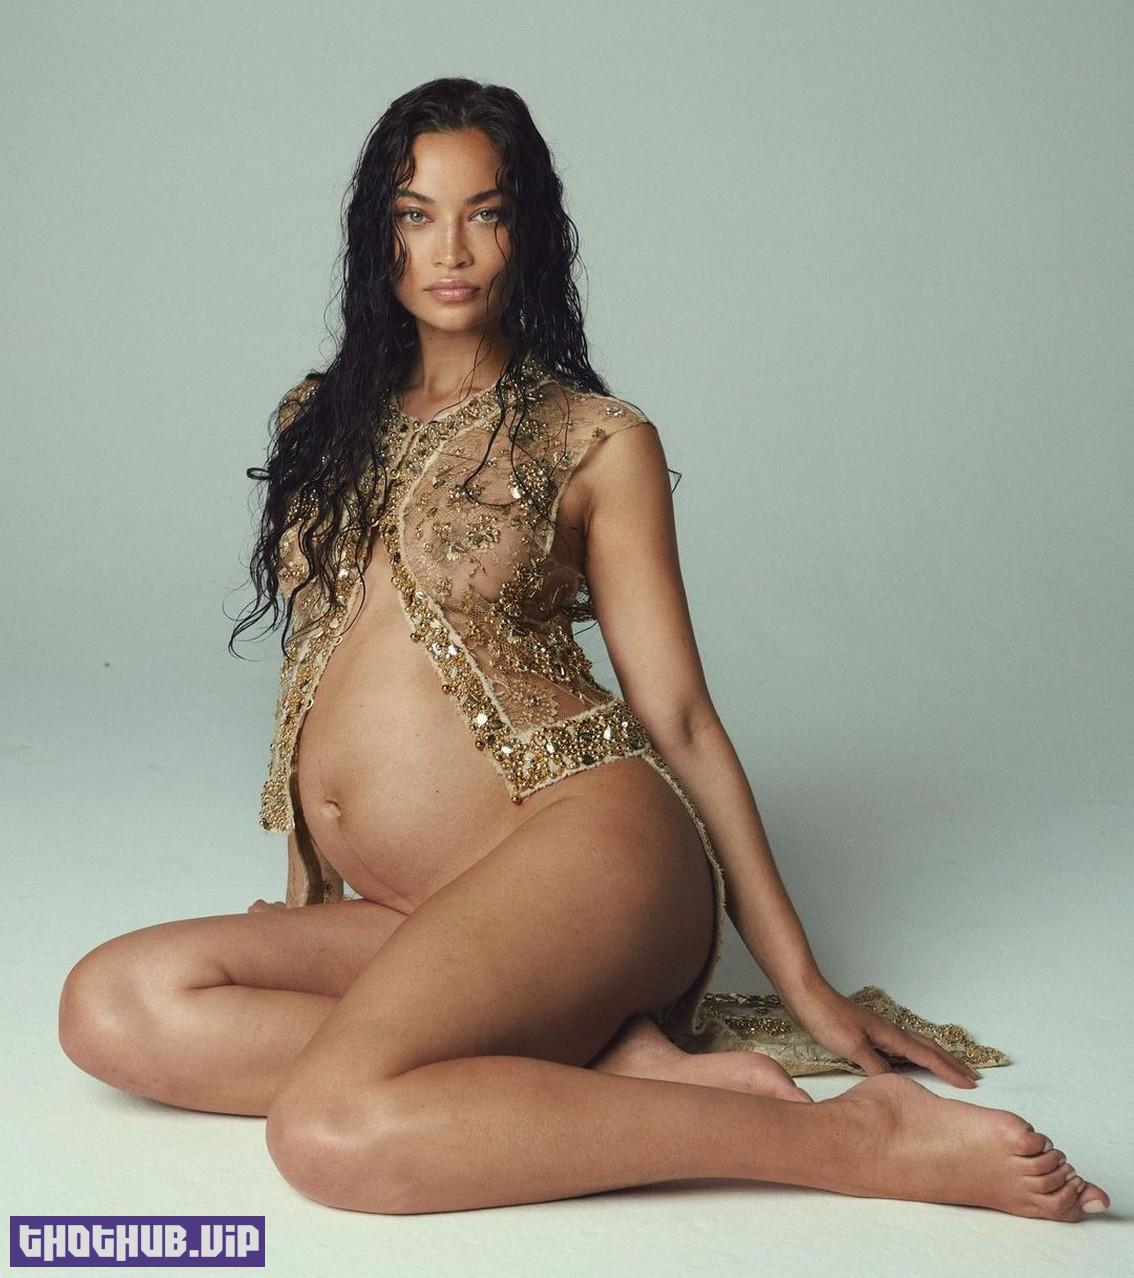 Shanina Shaik Pregnant Nudes